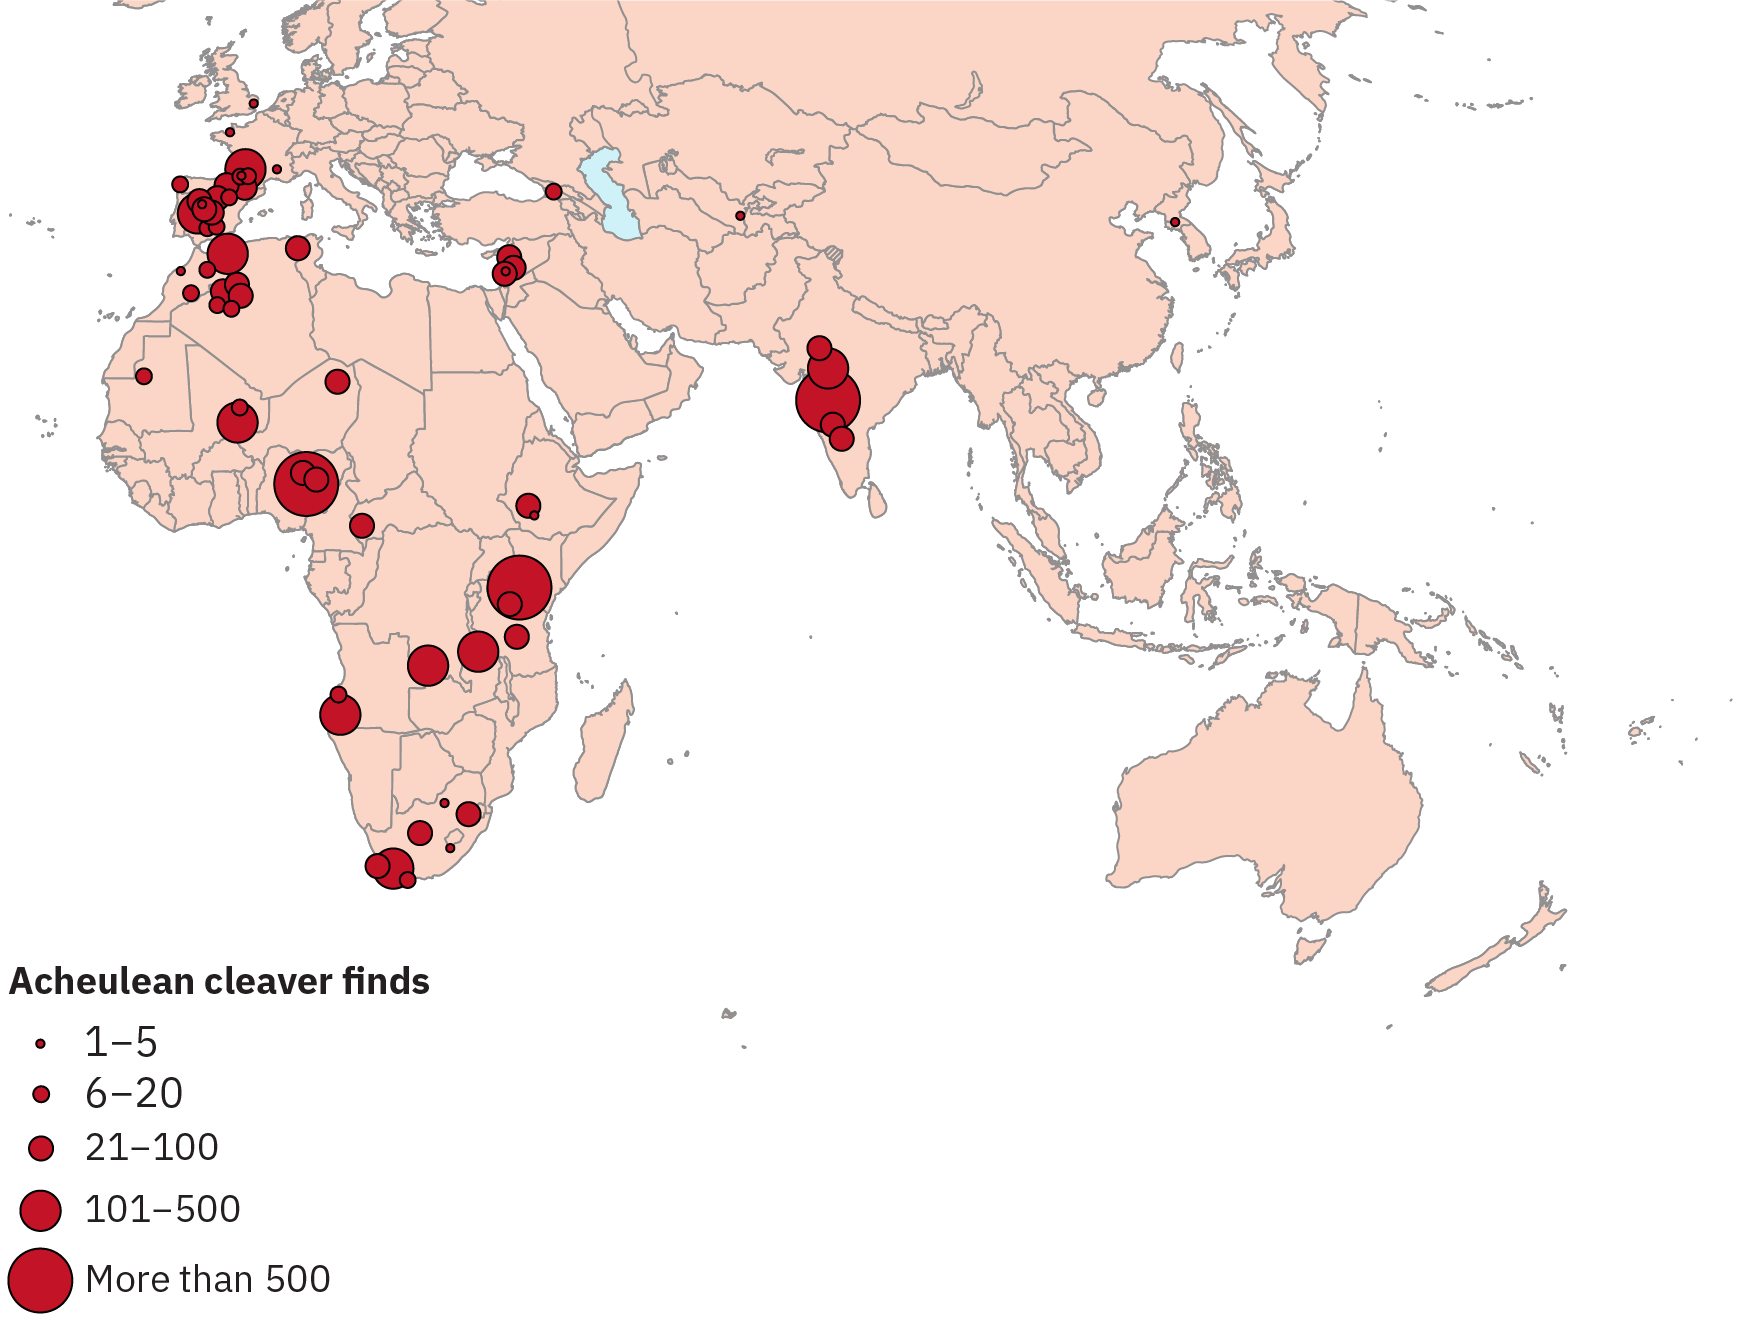 Marcas que indicam o número de achados de cutelo acheuliano impostos em um mapa da Europa, Ásia e África. Existem grupos de achados na Espanha, na Índia e em certas áreas da África.